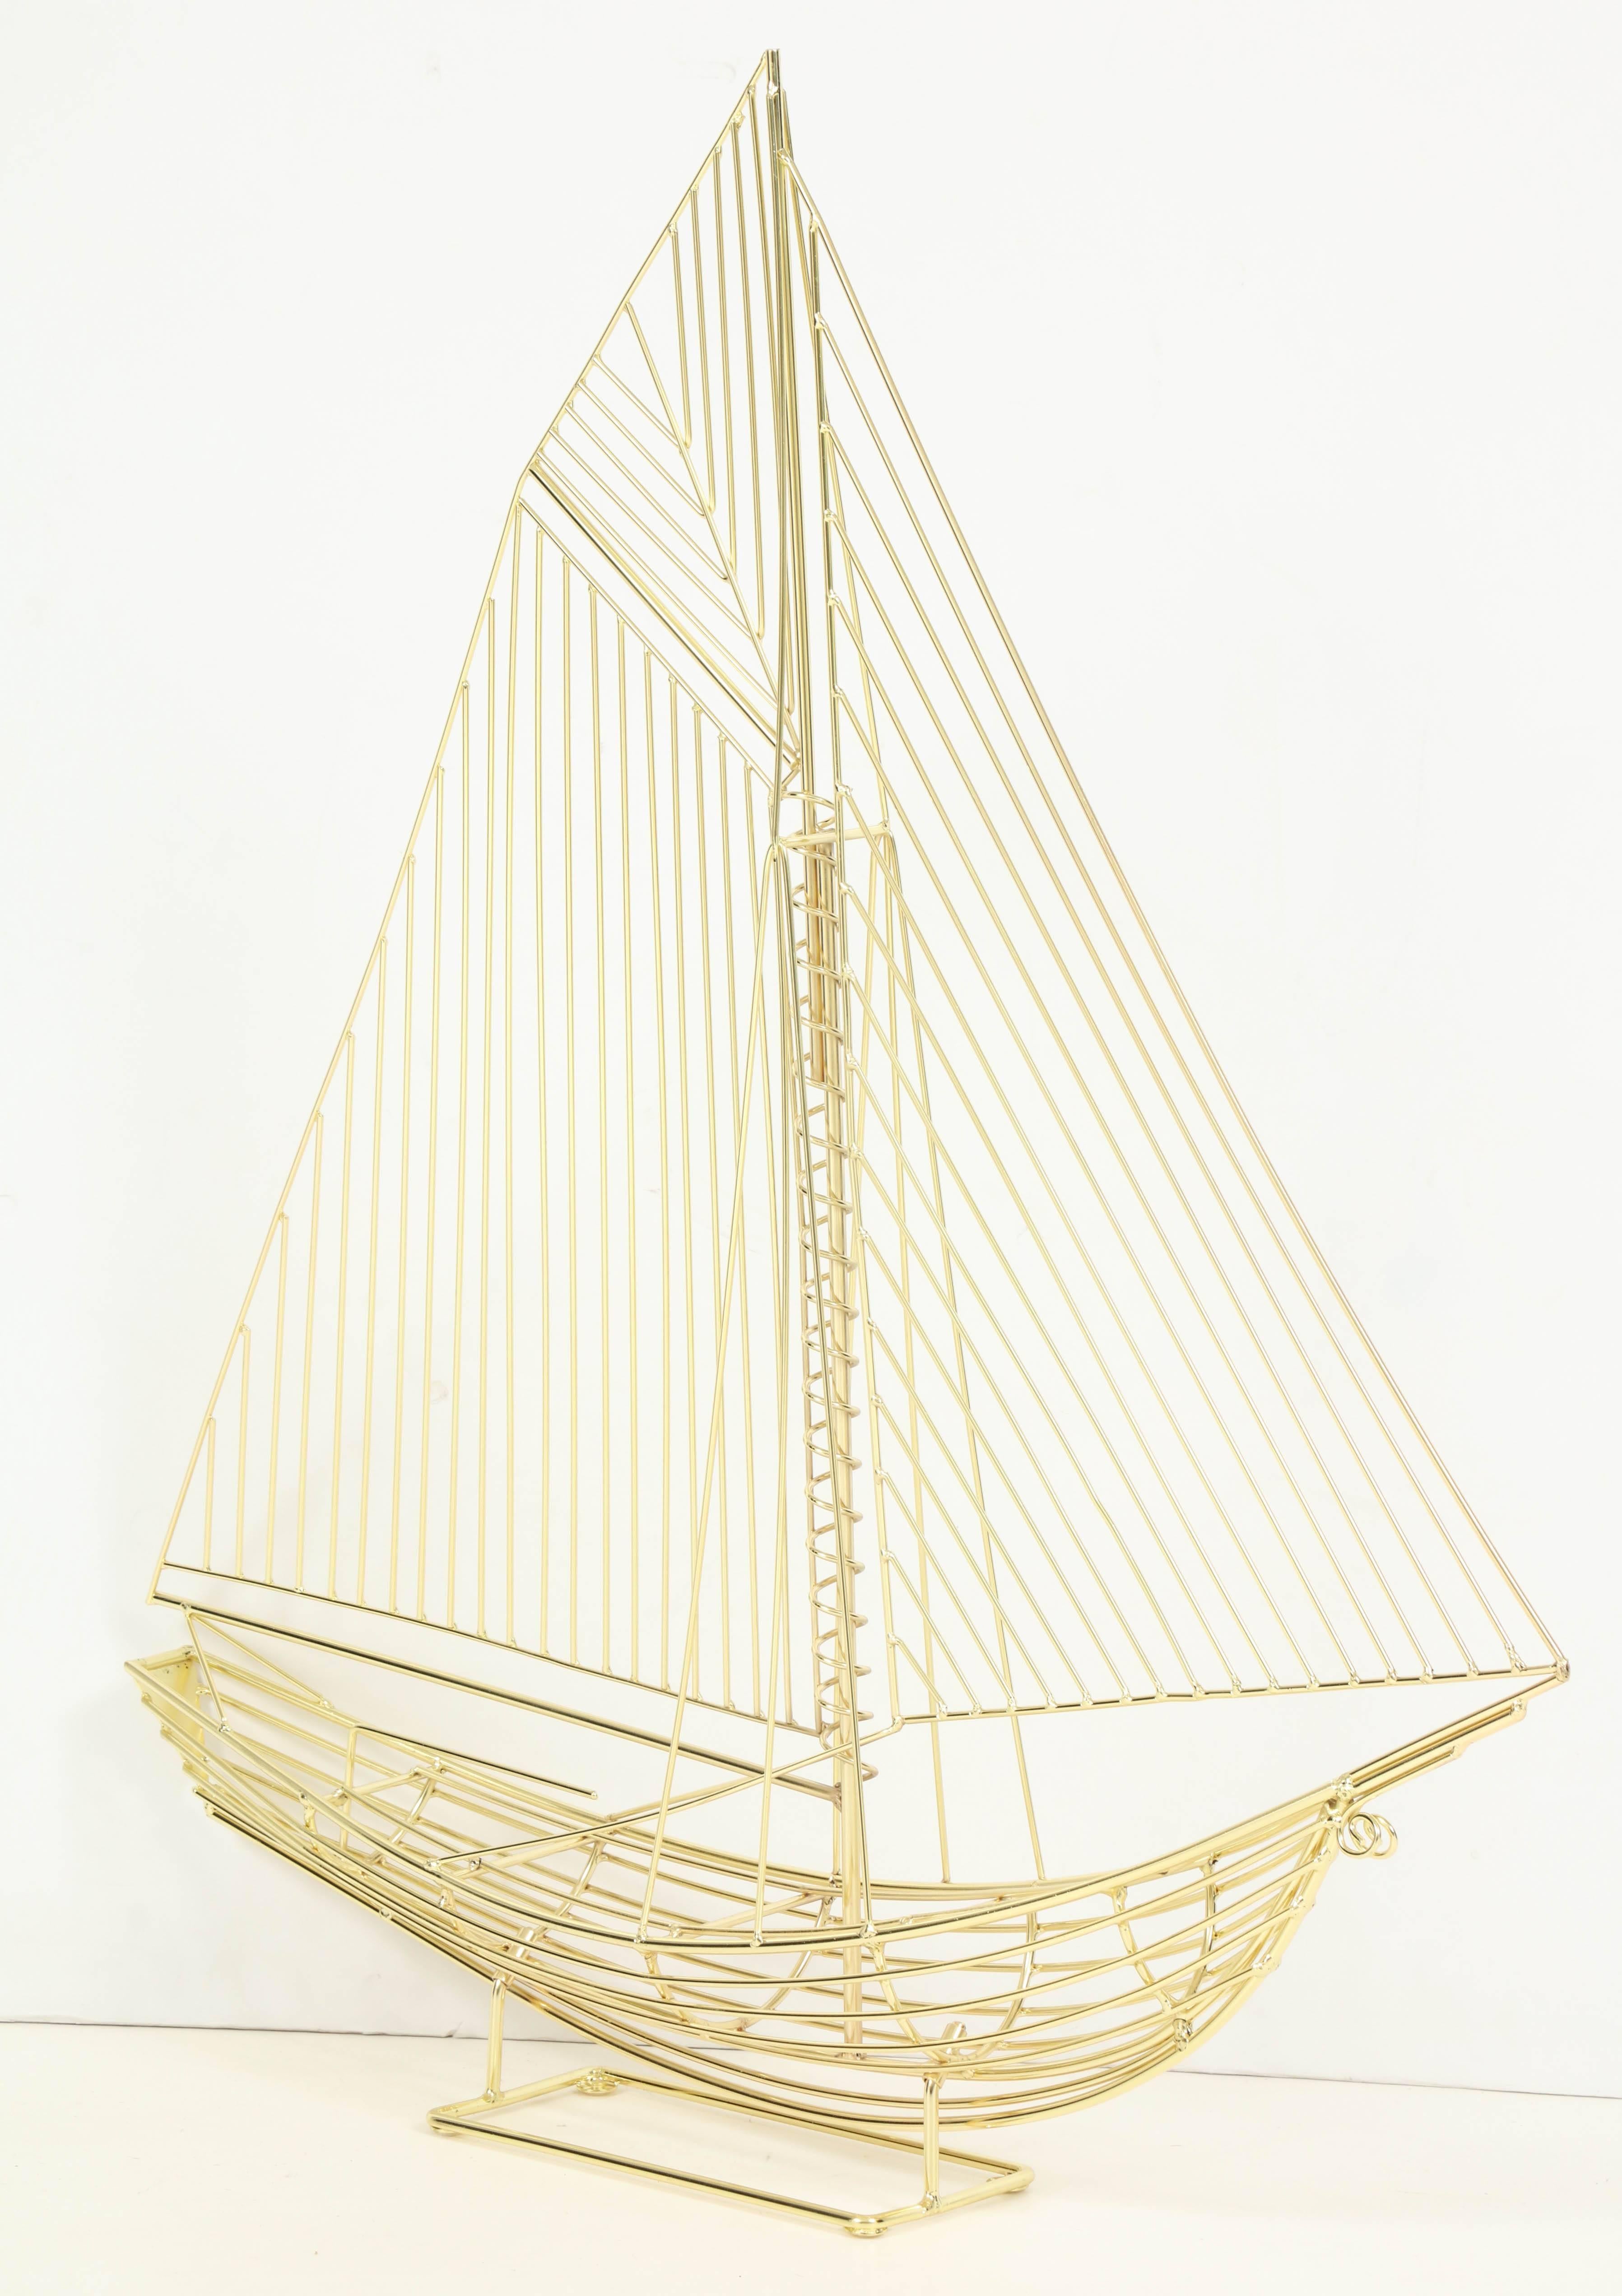 Boots- oder Schiffsskulptur von Curtis Jere, signiert, um 1970. Neu und professionell in Messing umgefärbt. Das Originaletikett von C. Jere ist noch vorhanden. Diese Skulptur ist in der Gallery at 200 Lex im New York Design Center zu sehen.